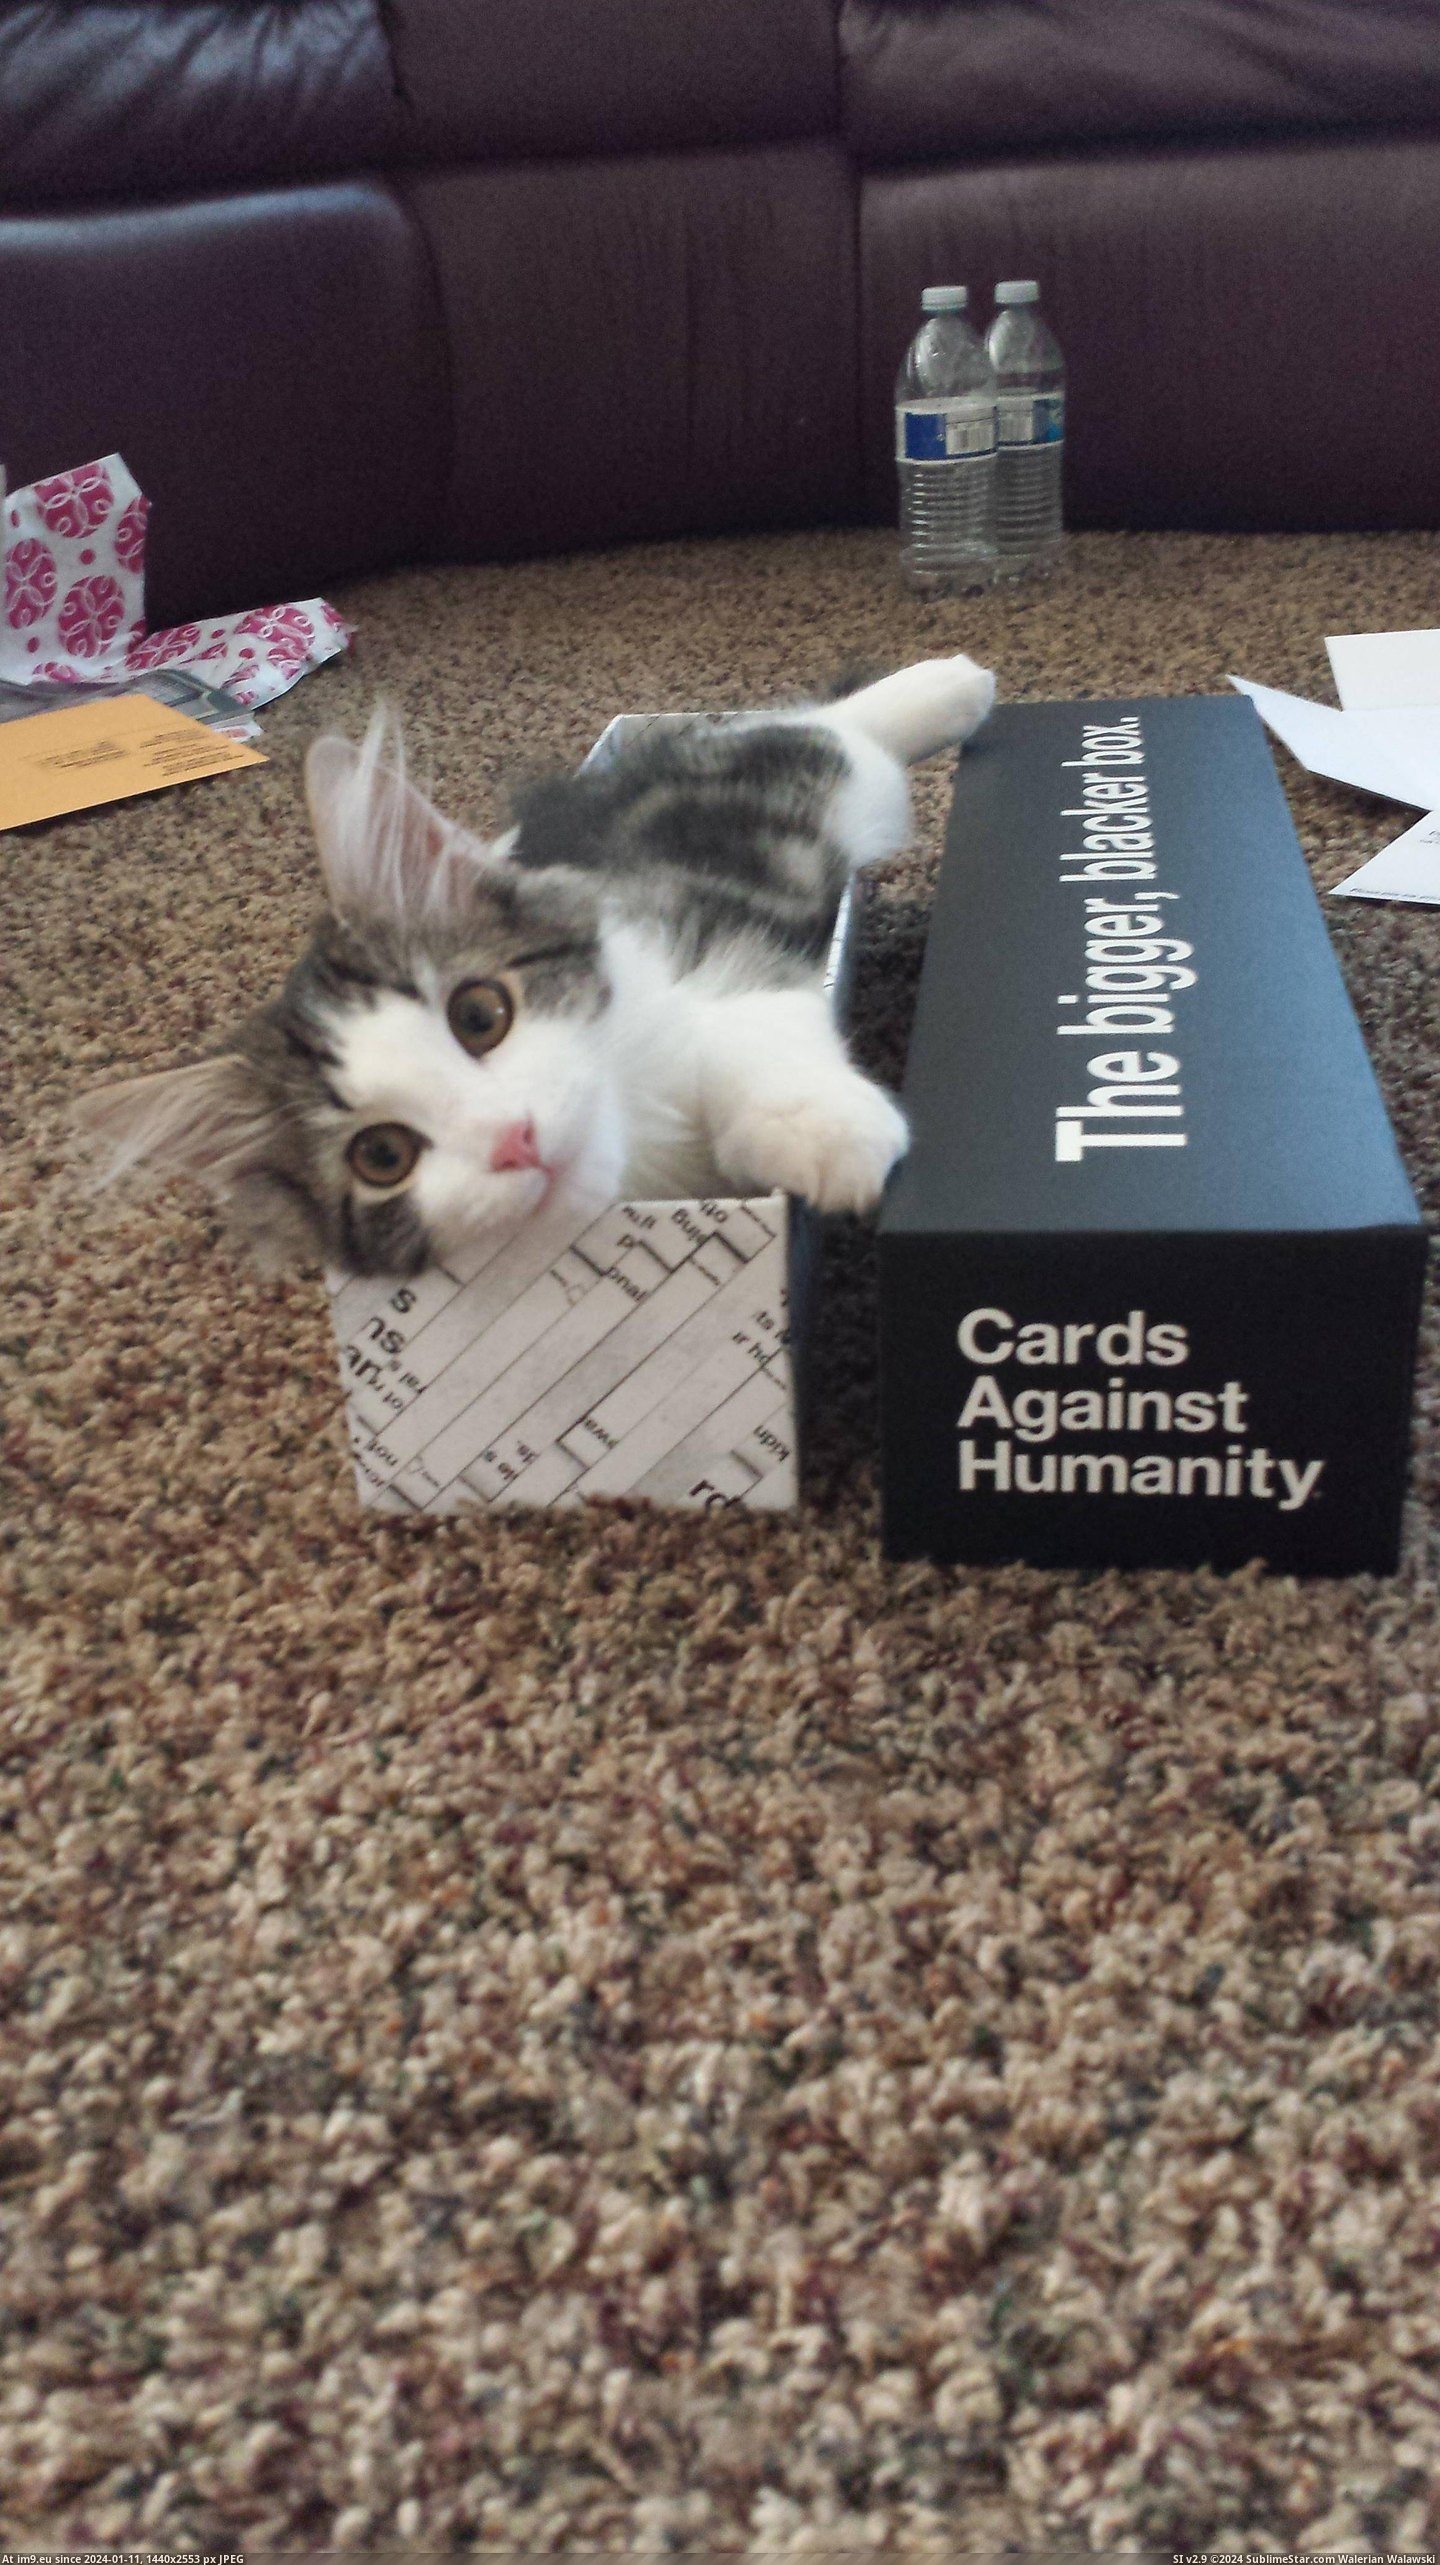 #Cat #Box #Thrilled #Blacker #Mail #Bigger [Aww] Got the bigger, blacker box today in the mail. My cat was thrilled. Pic. (Bild von album My r/AWW favs))